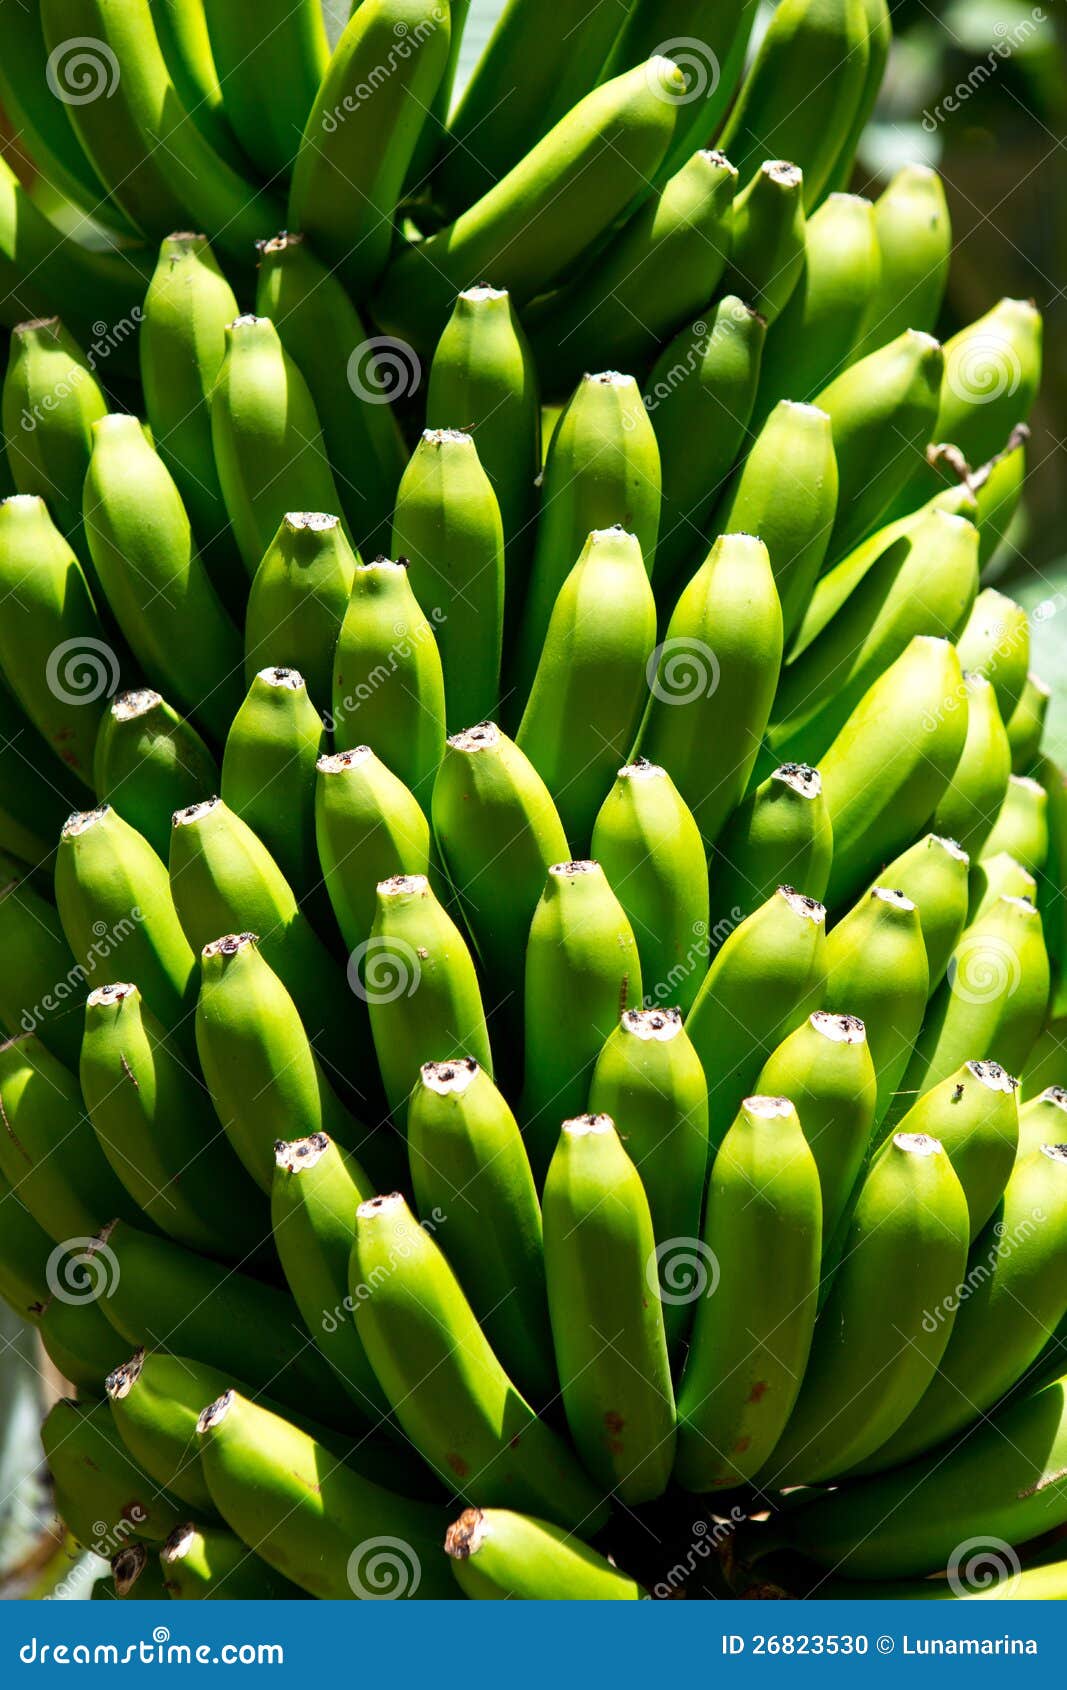 canarian banana plantation platano in la palma